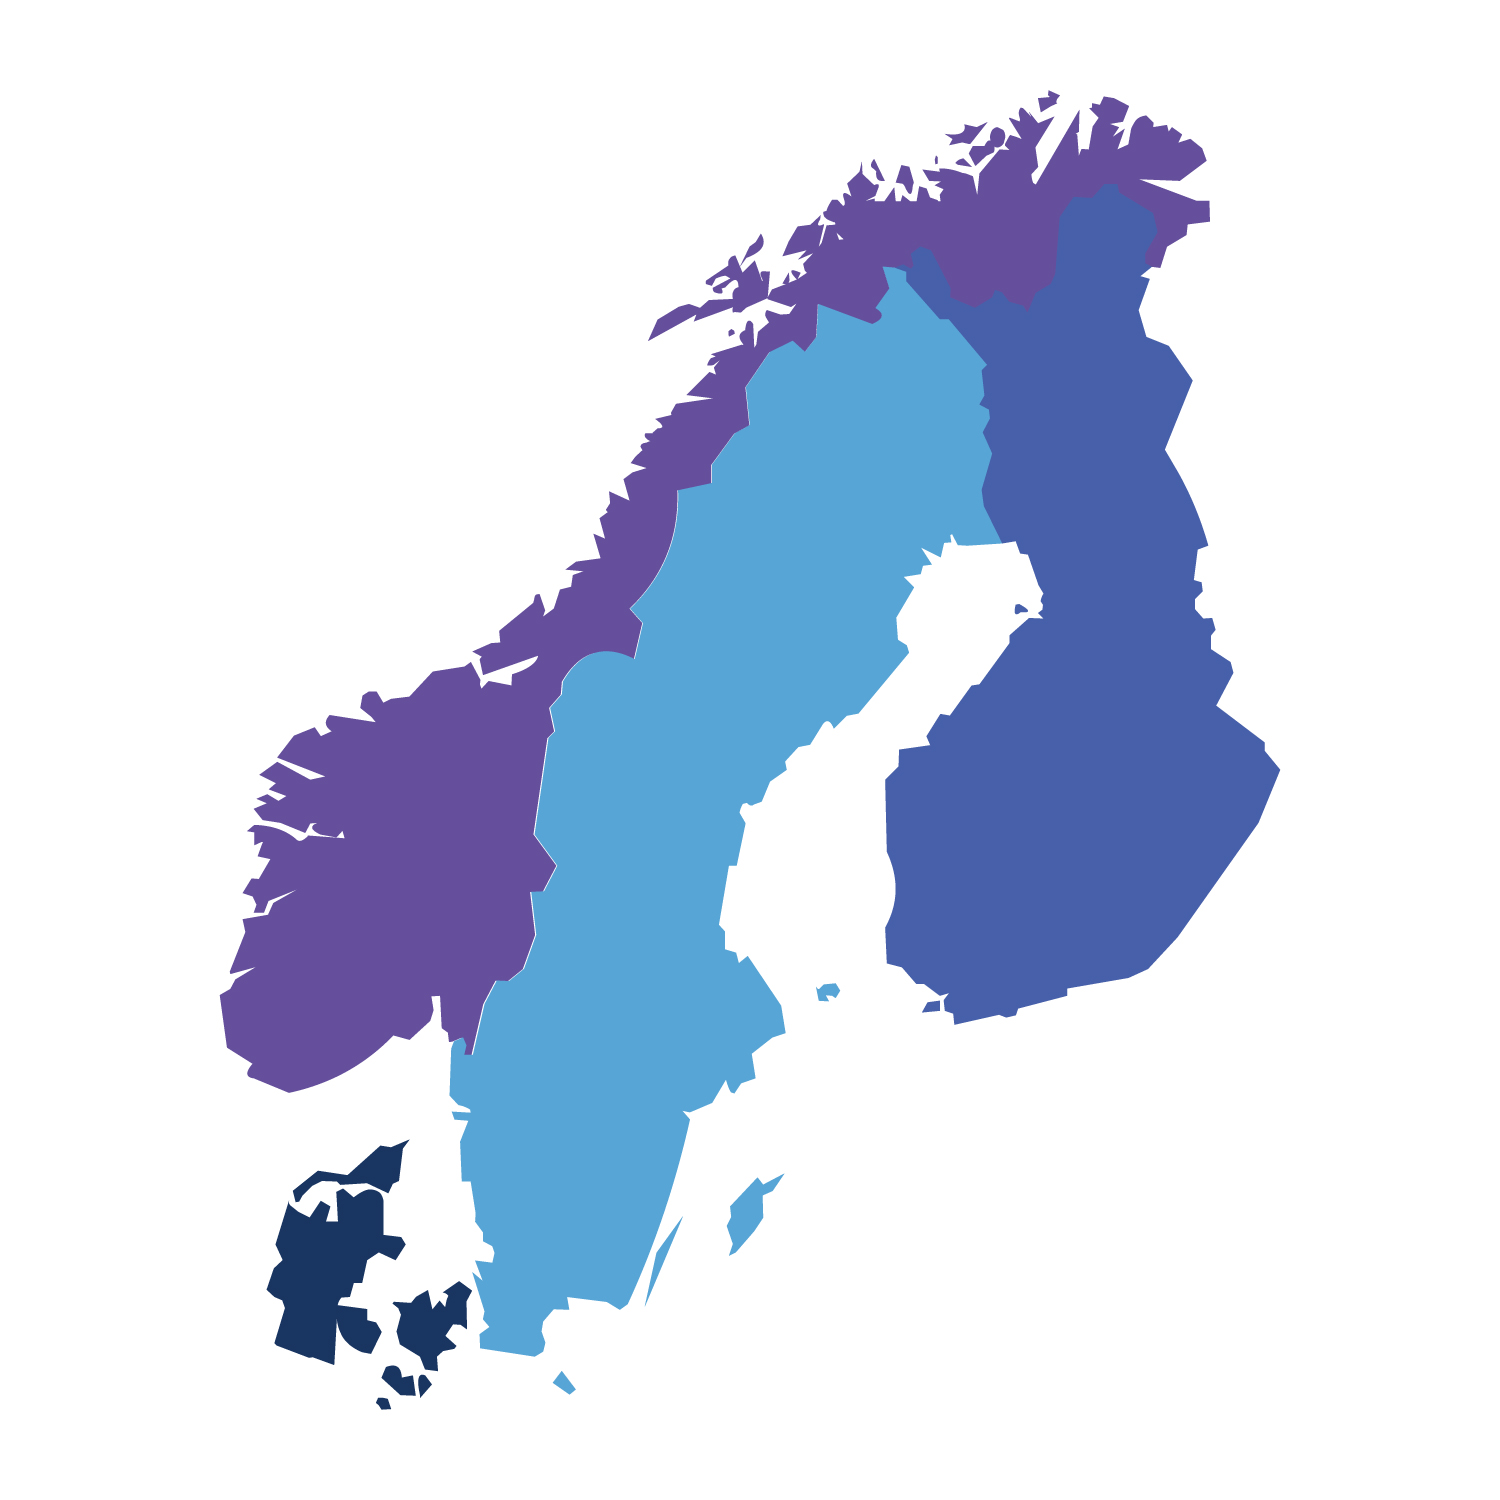 Kort over nordiske lande